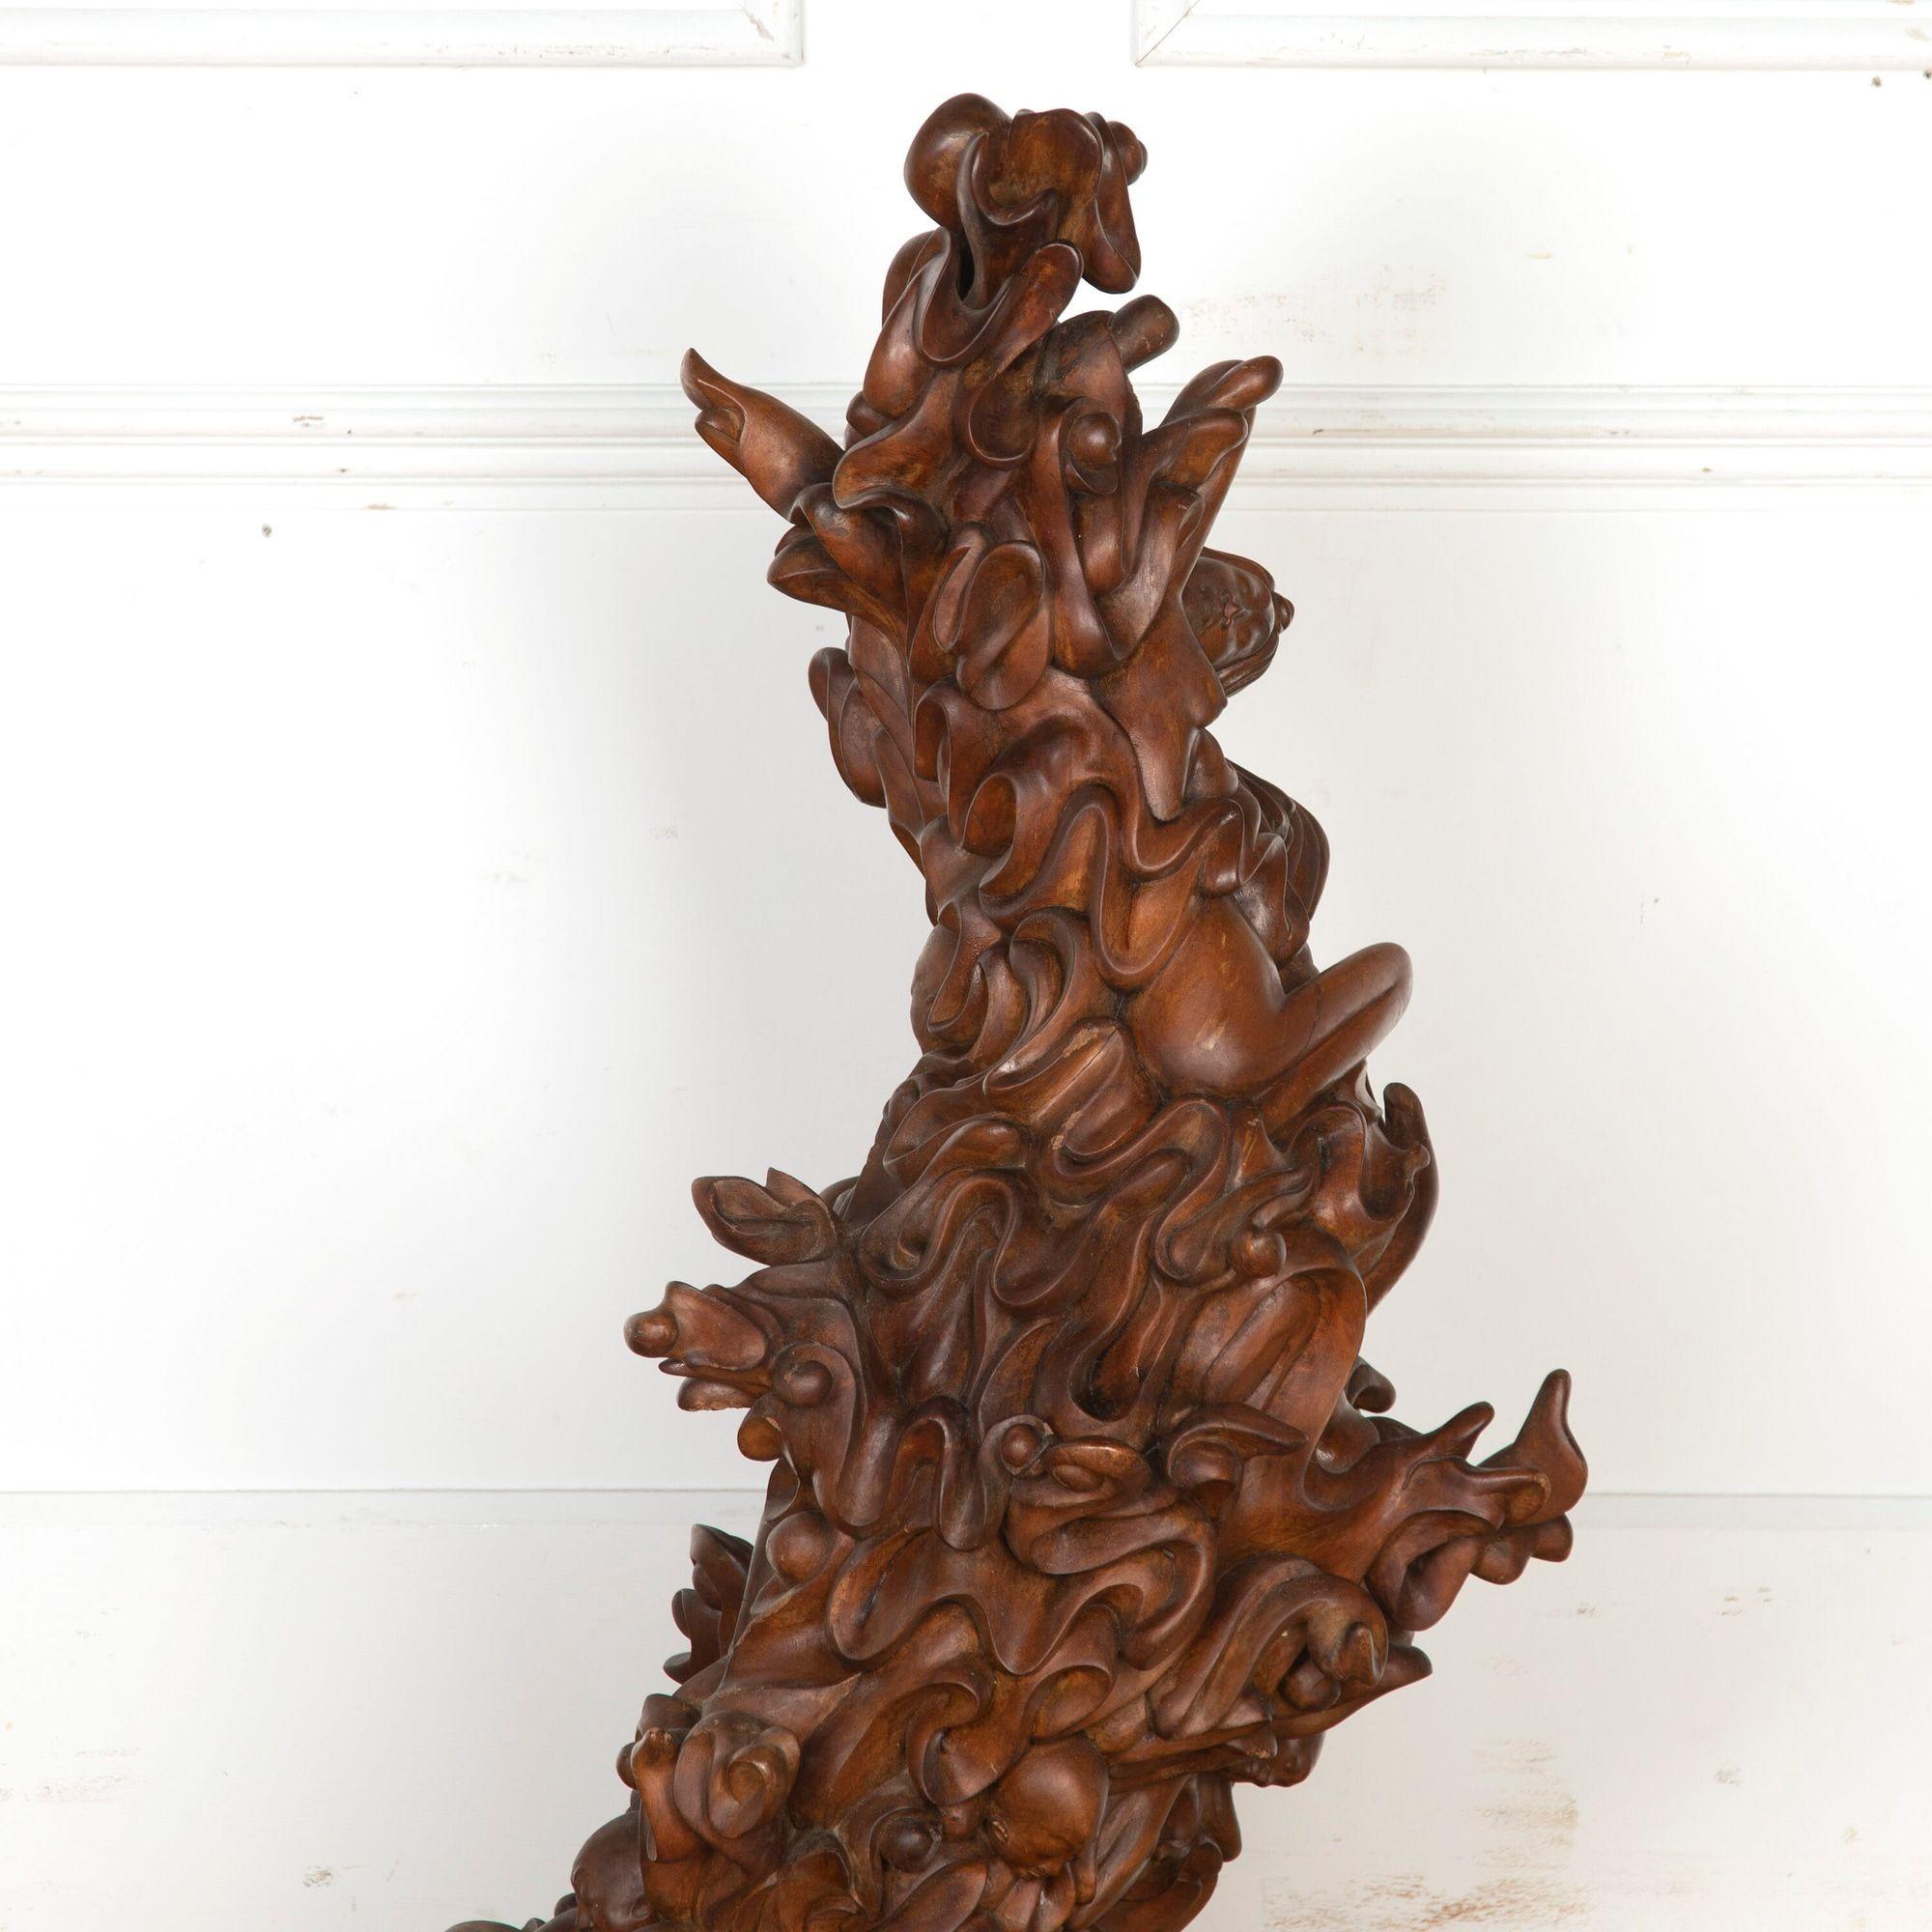 Fantastische javanische biomorphe Skulptur des 20. Jahrhunderts. 
Diese schöne, handgeschnitzte Skulptur stellt Wellen und schwimmende Figuren mit wunderbarer Bewegung dar. 
Es besteht aus reichem und dunklem Holz, das sich glatt anfühlt und schön